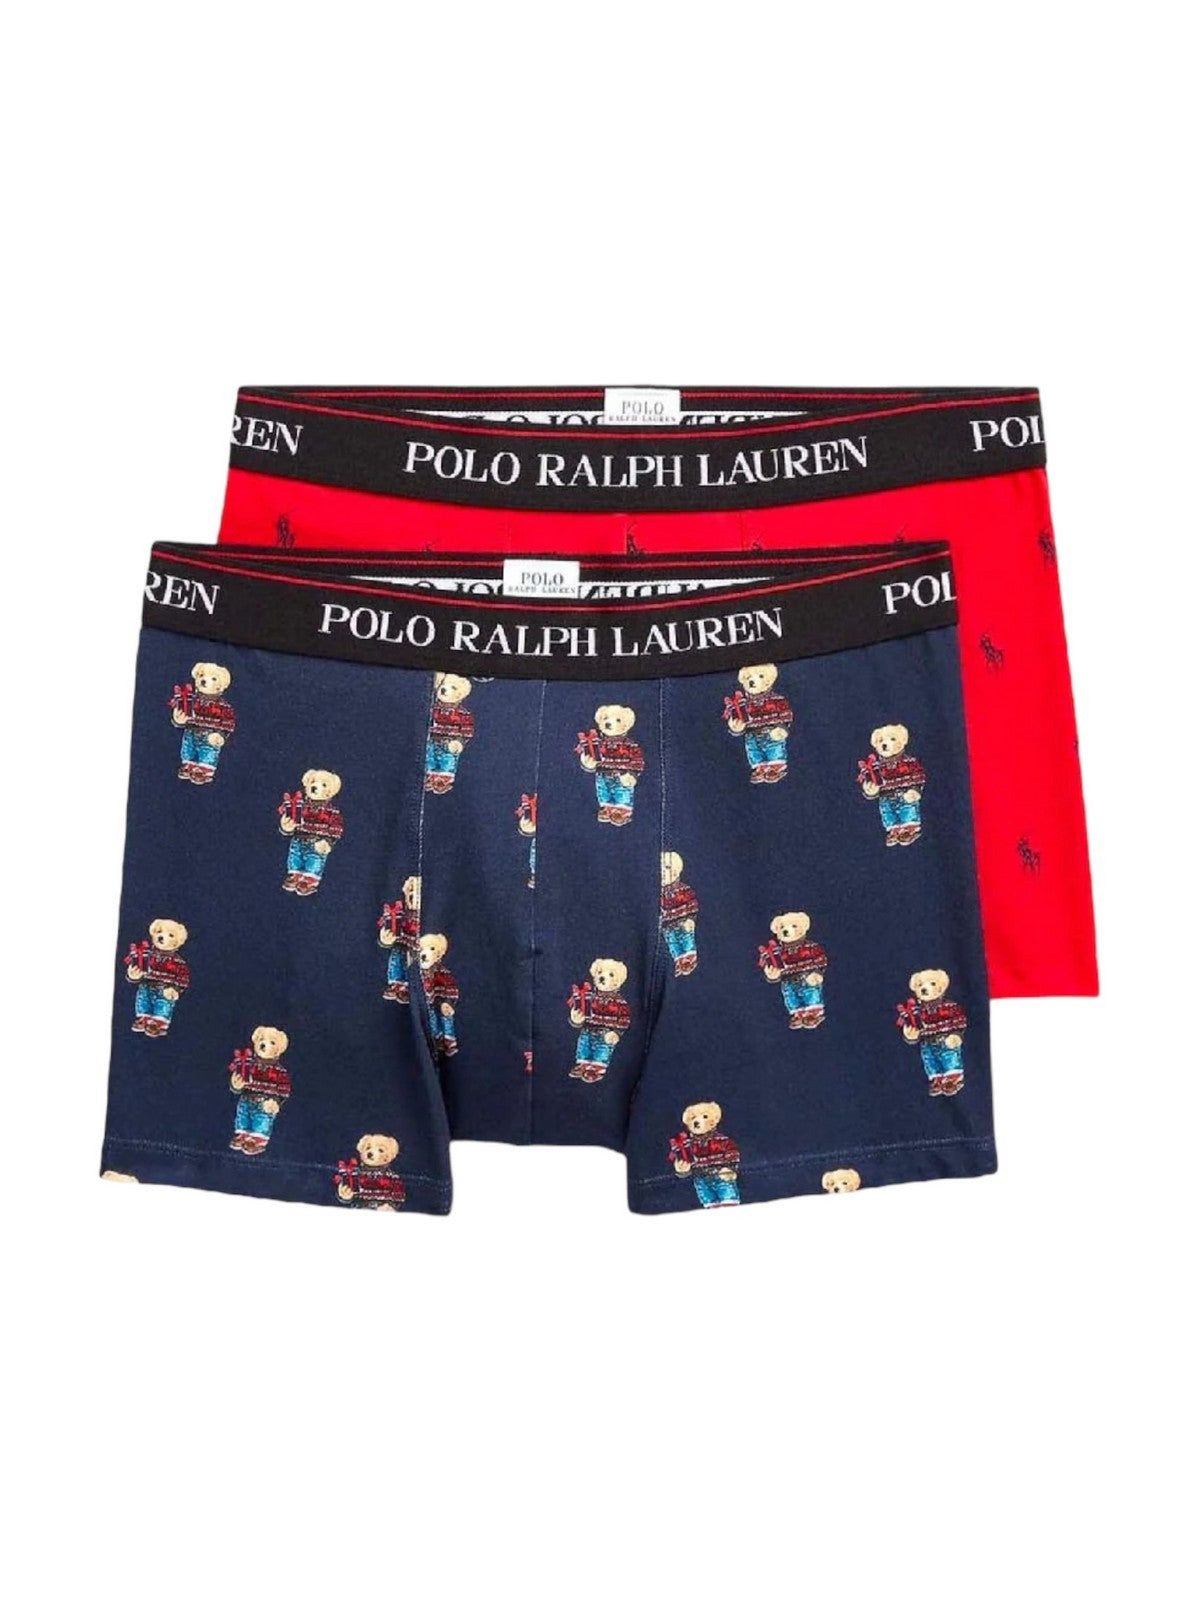 POLO RALPH LAUREN Hommes Boxer 714916019 002 Multicolore